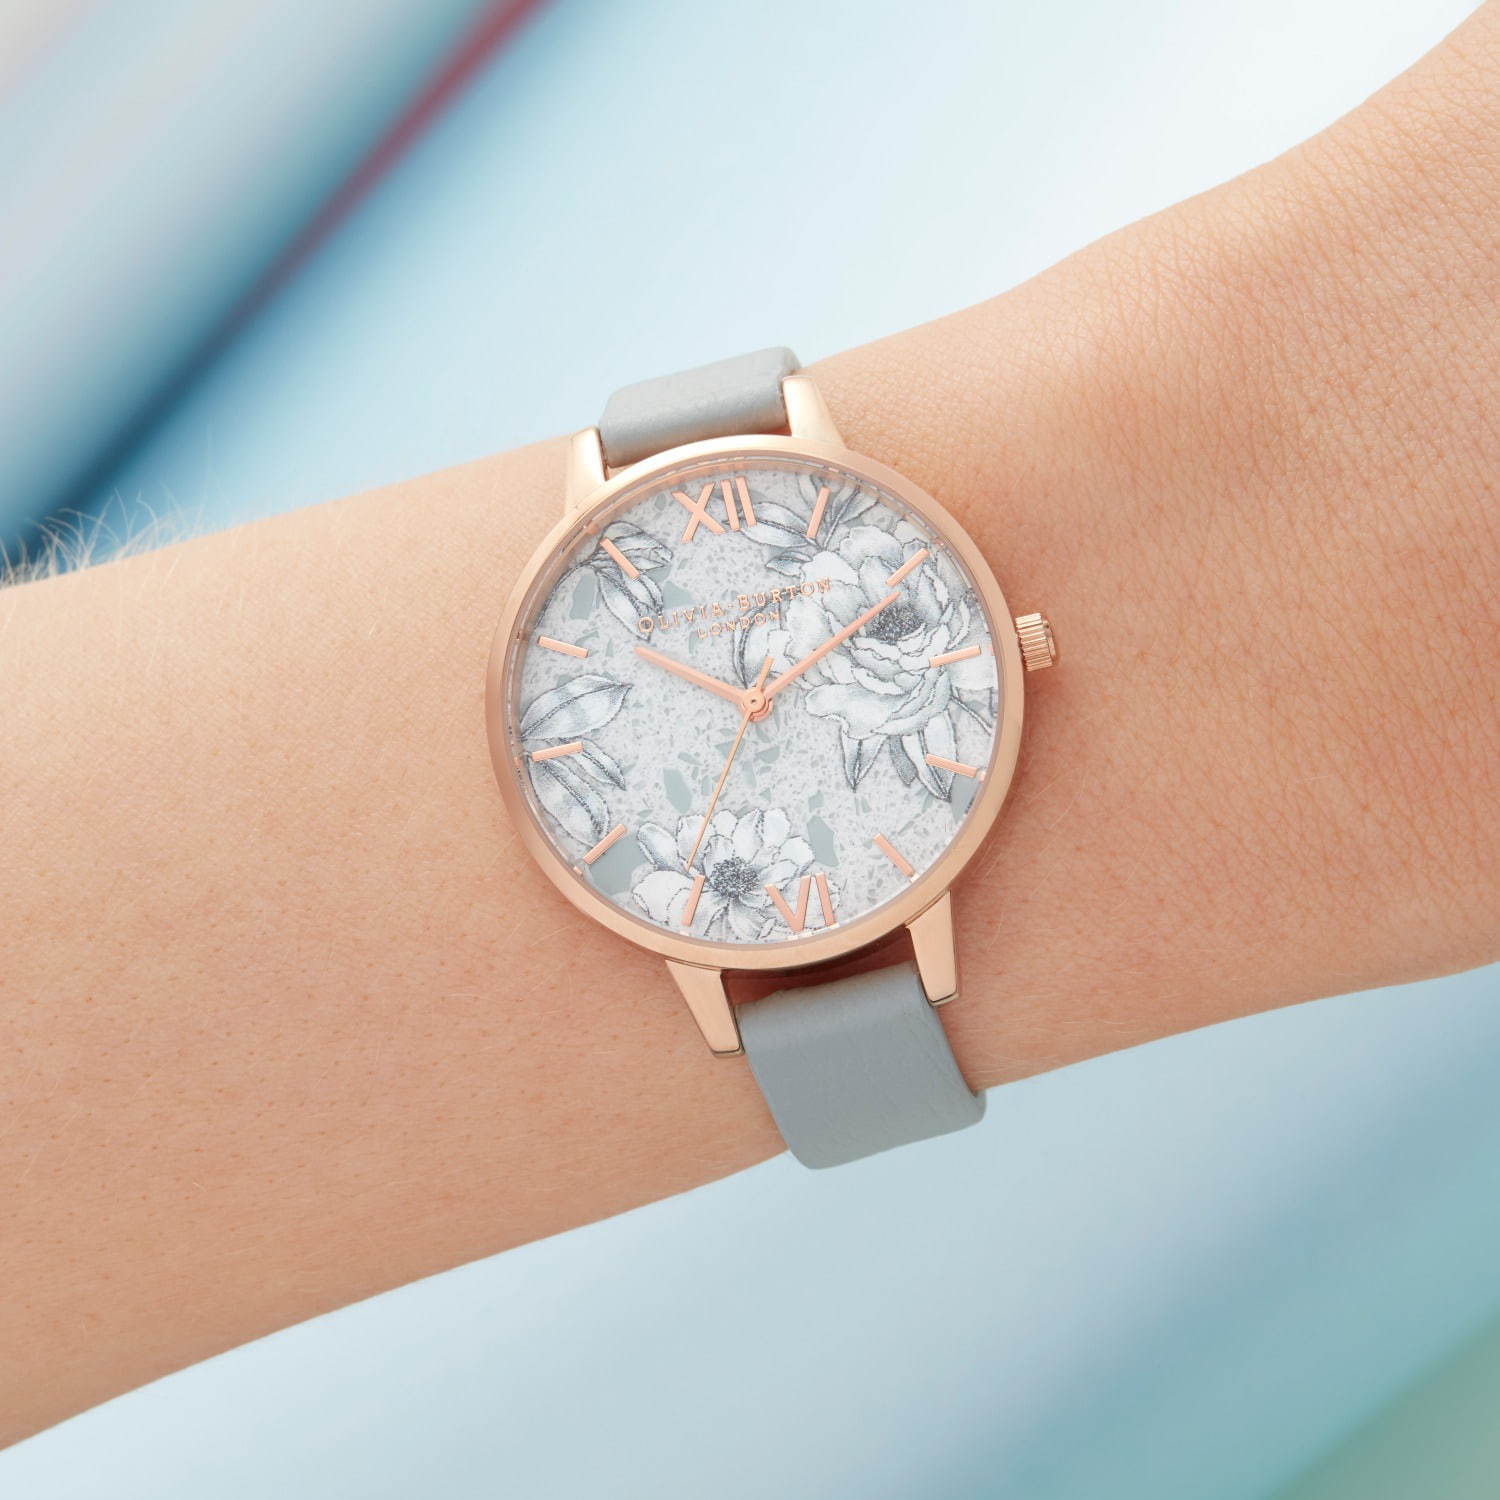 オリビア・バートンの新作腕時計 - 煌めくグリッターや“蜂”モチーフ 